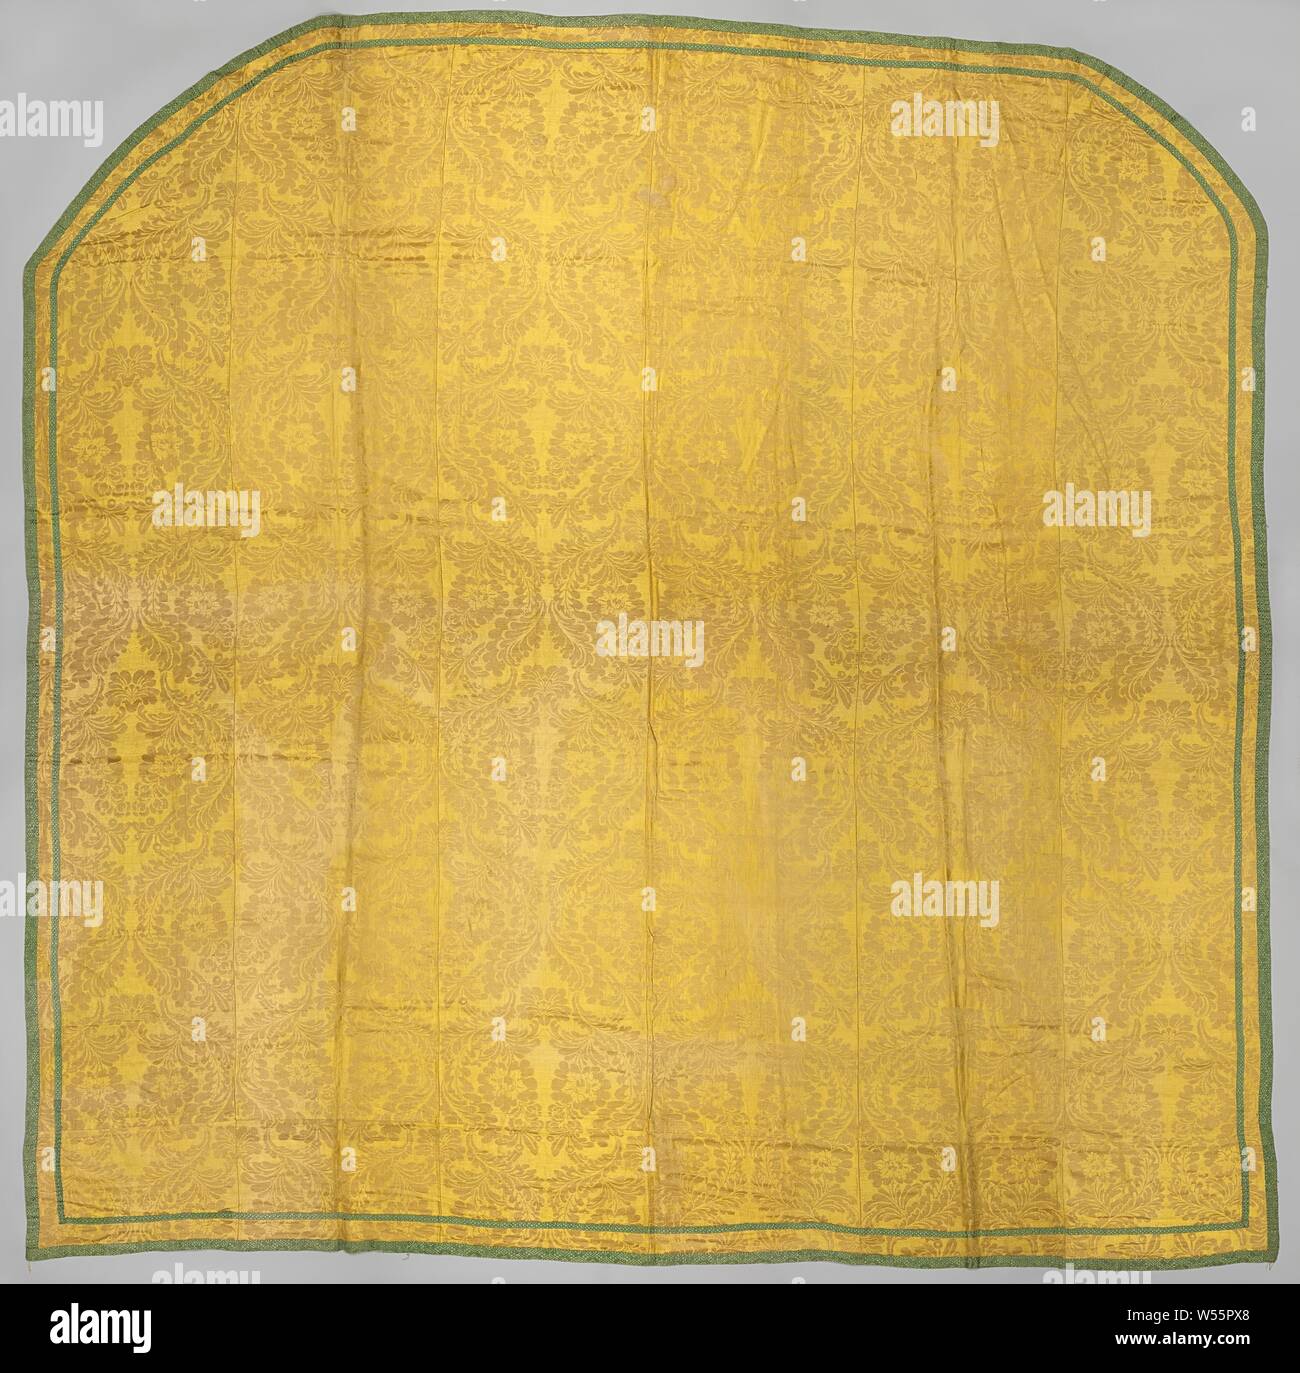 Tagesdecke, Tagesdecke der Hälfte - Seide mit gelbem Damast Muster von Blumen, beendete mit einem grünen Seide Bullion. Zwei Ecken sind abgerundet. Die Bettdecke ist gesäumt mit rohen, Bettwäsche (?)., anonym, C. 1700 - C. 1750, Seide, Leinen (Material), Stickerei, l 295.0 cm × w 300,0 cm Stockfoto